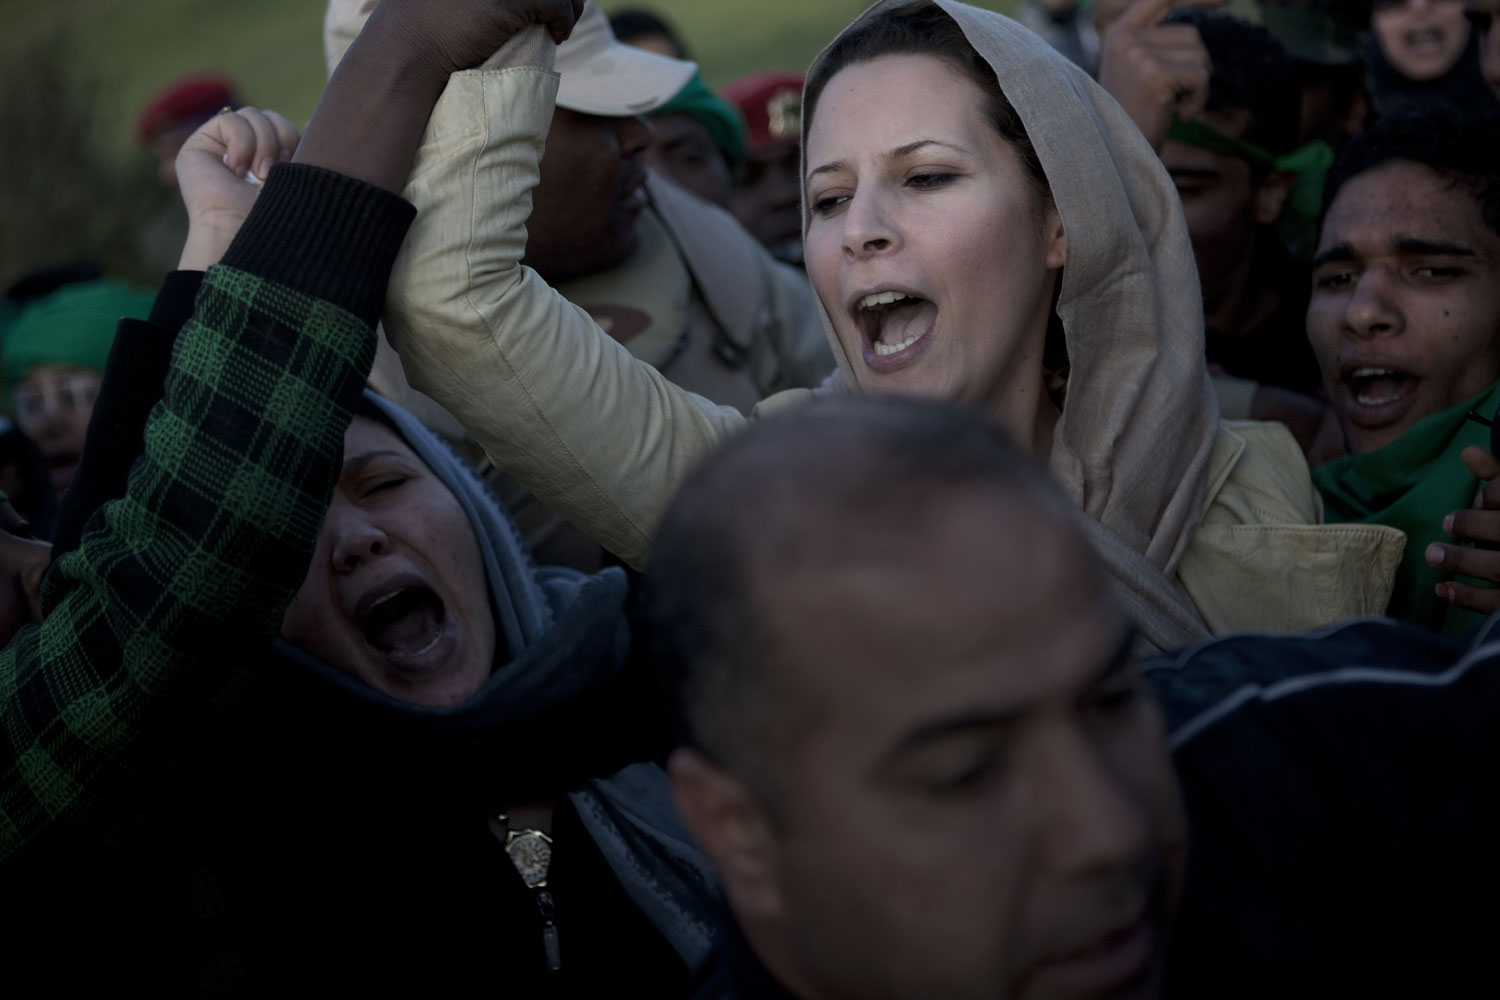 Ayesha Gaddafi, daughter of Muammar Gaddafi, with loyalist supporters in Tripoli